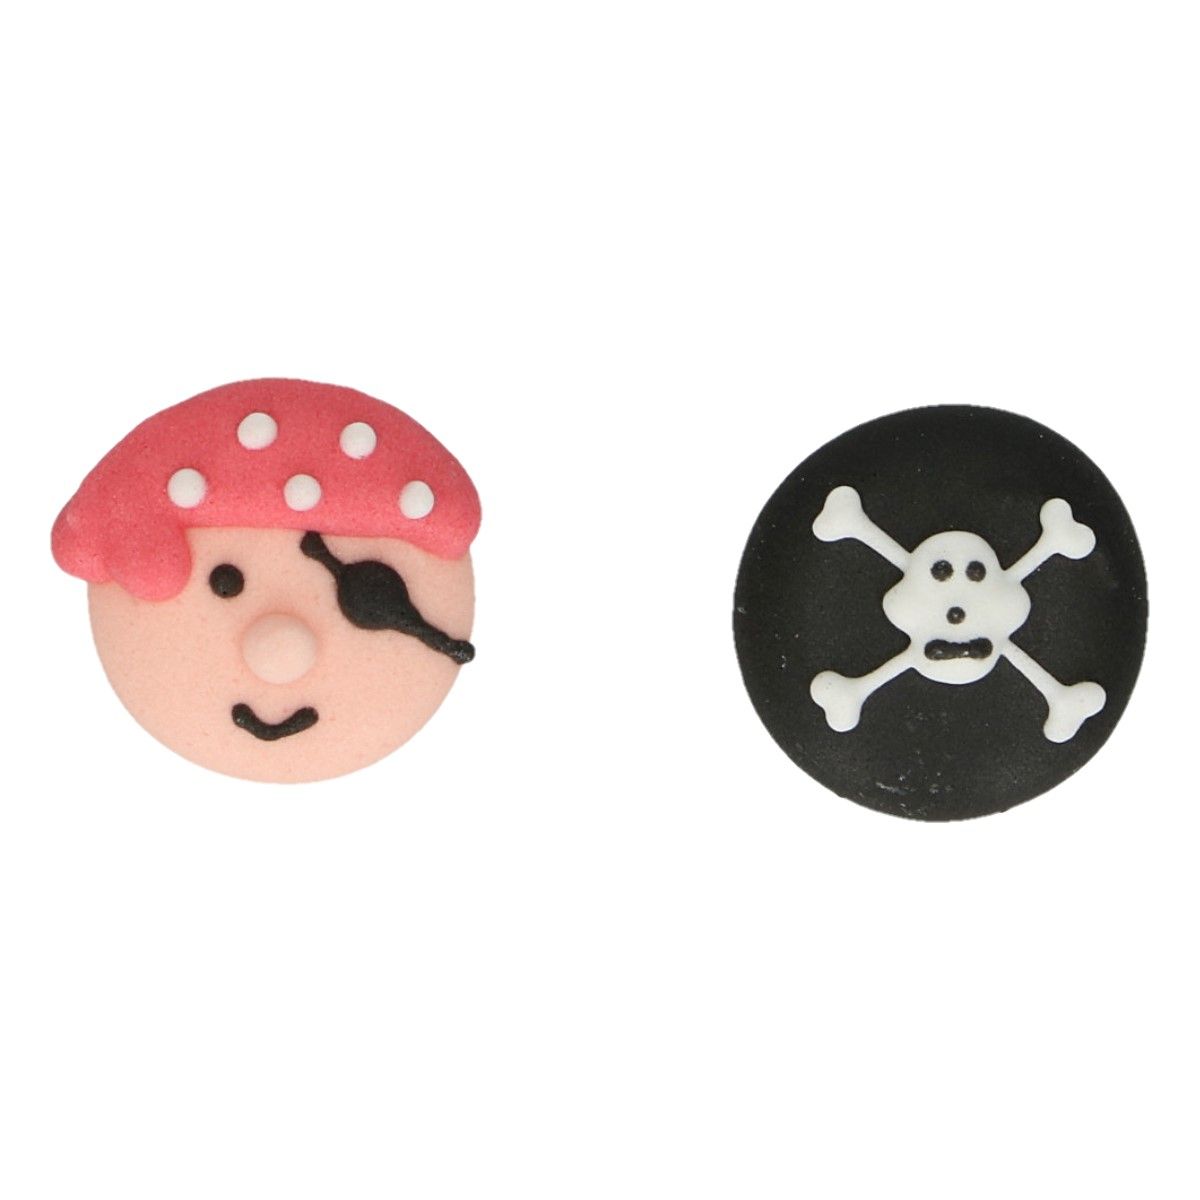 Zuckerdekoration Piraten